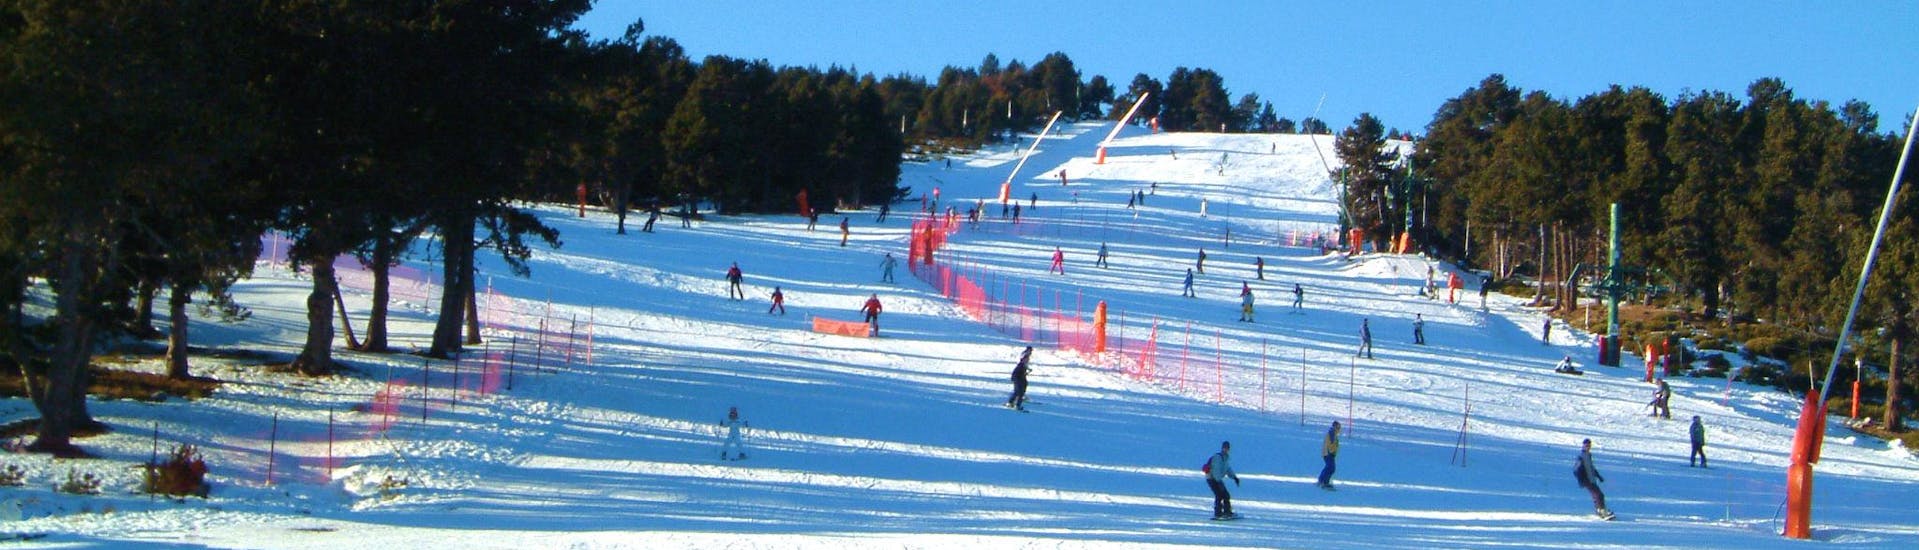 Des skieurs descendent l'une des pistes enneigée de la station de ski française de Font Romeu dans les Pyrénées.